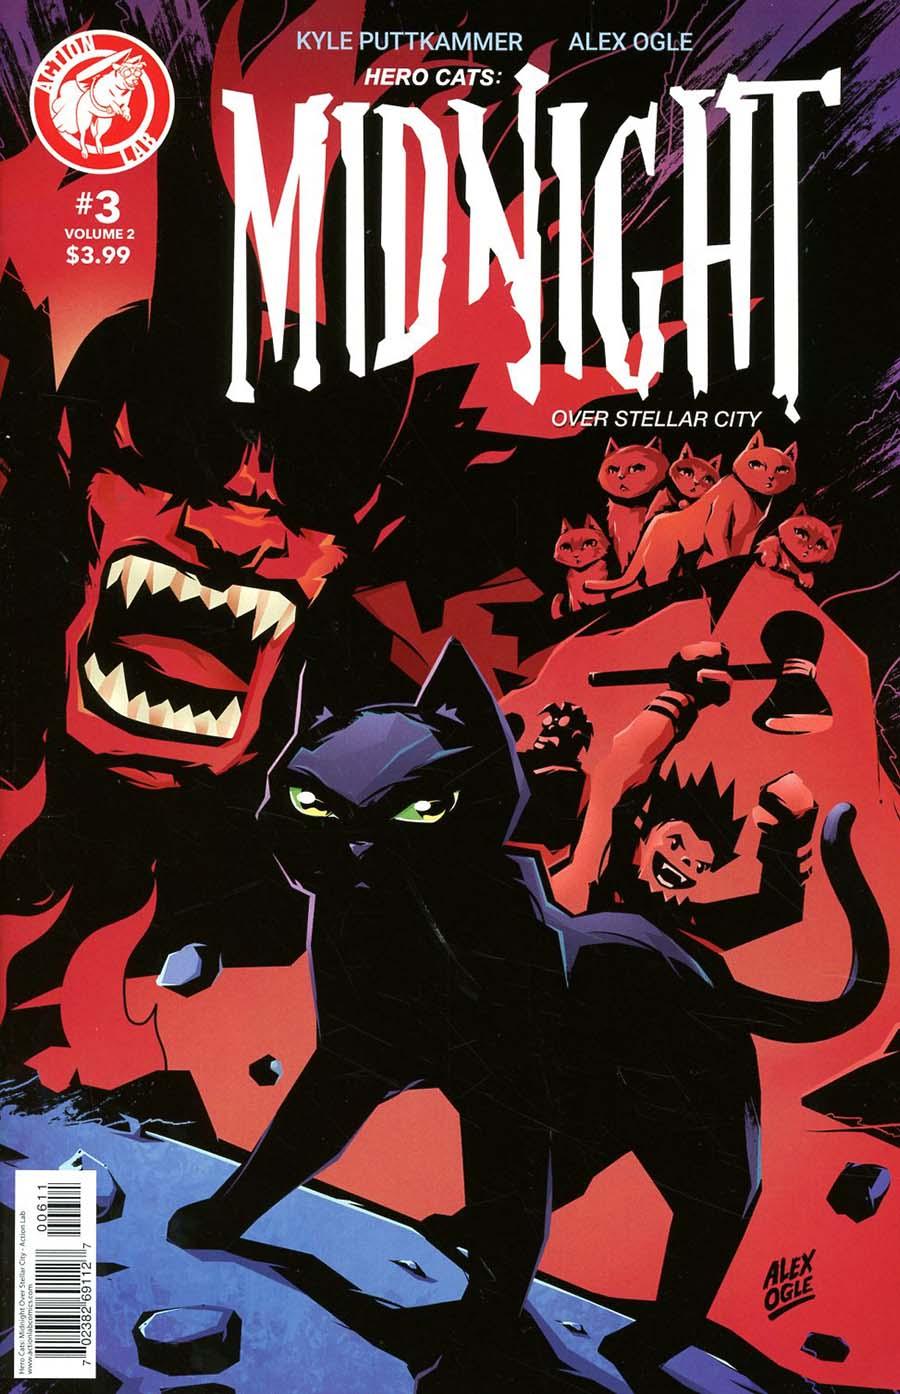 Hero Cats Midnight Over Stellar City Vol. 2 #3